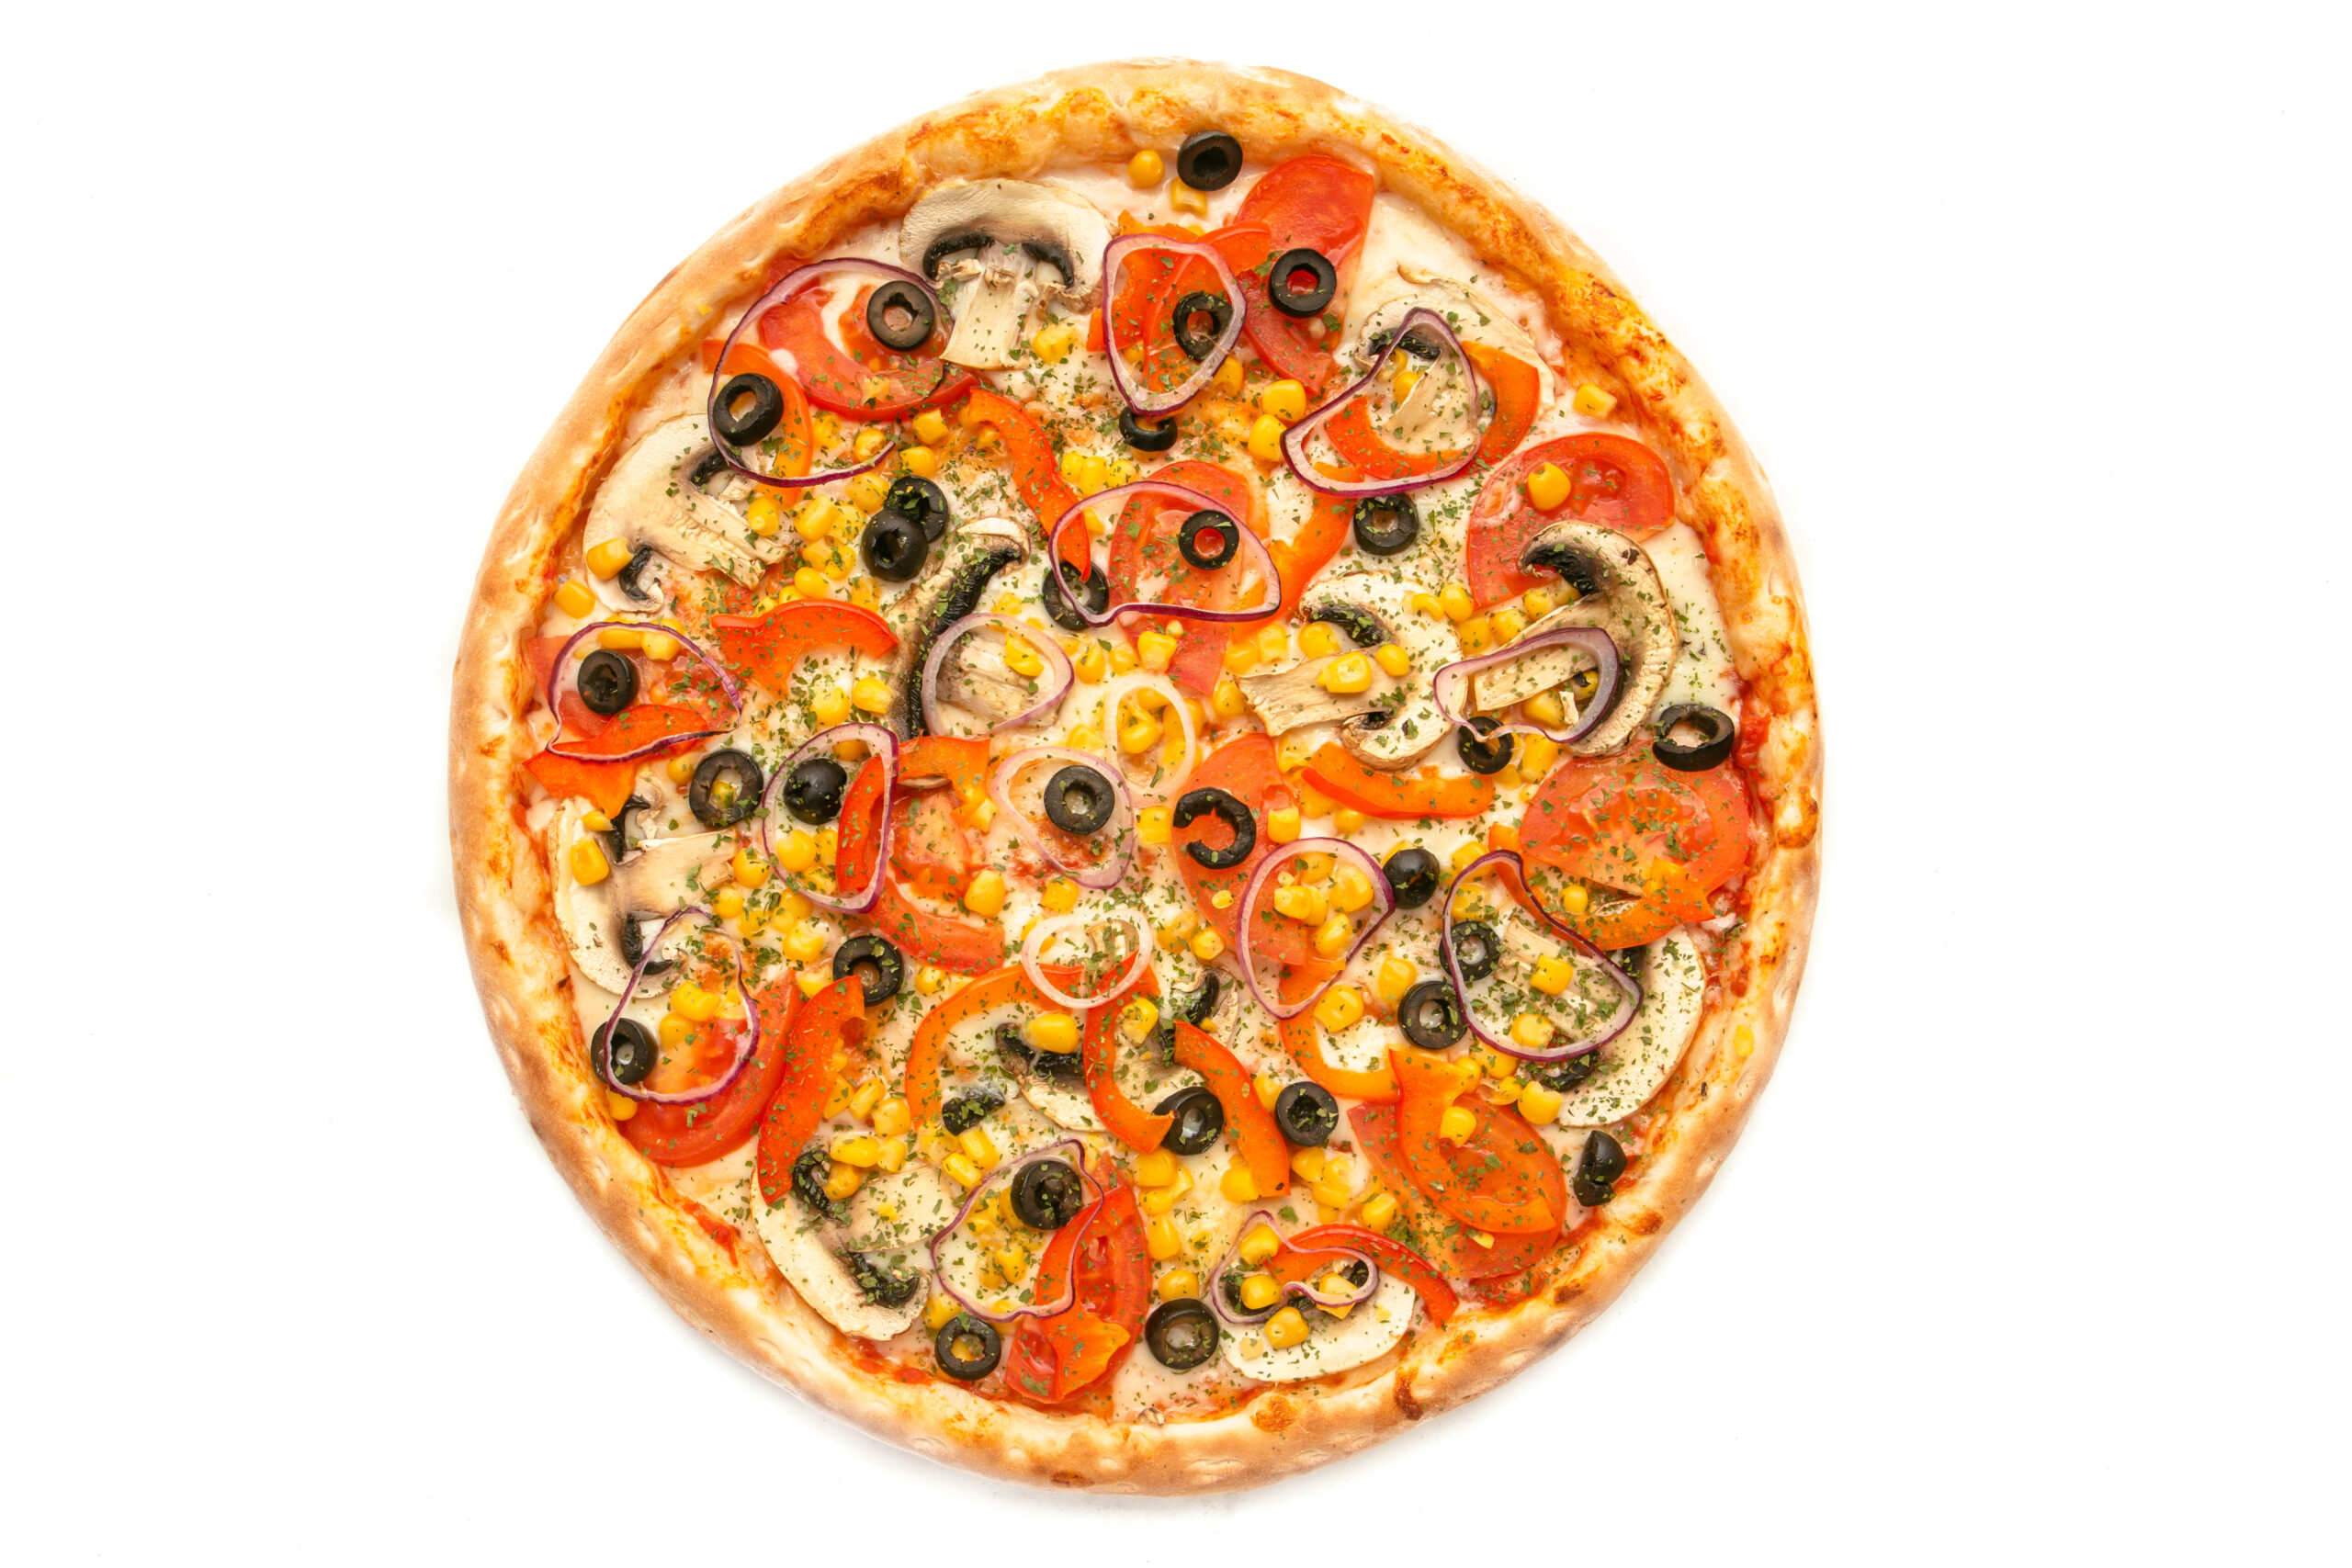 я хочу пиццу я хочу чтобы ты приправил ее соусом сыром сжег заставил плакать фото 114